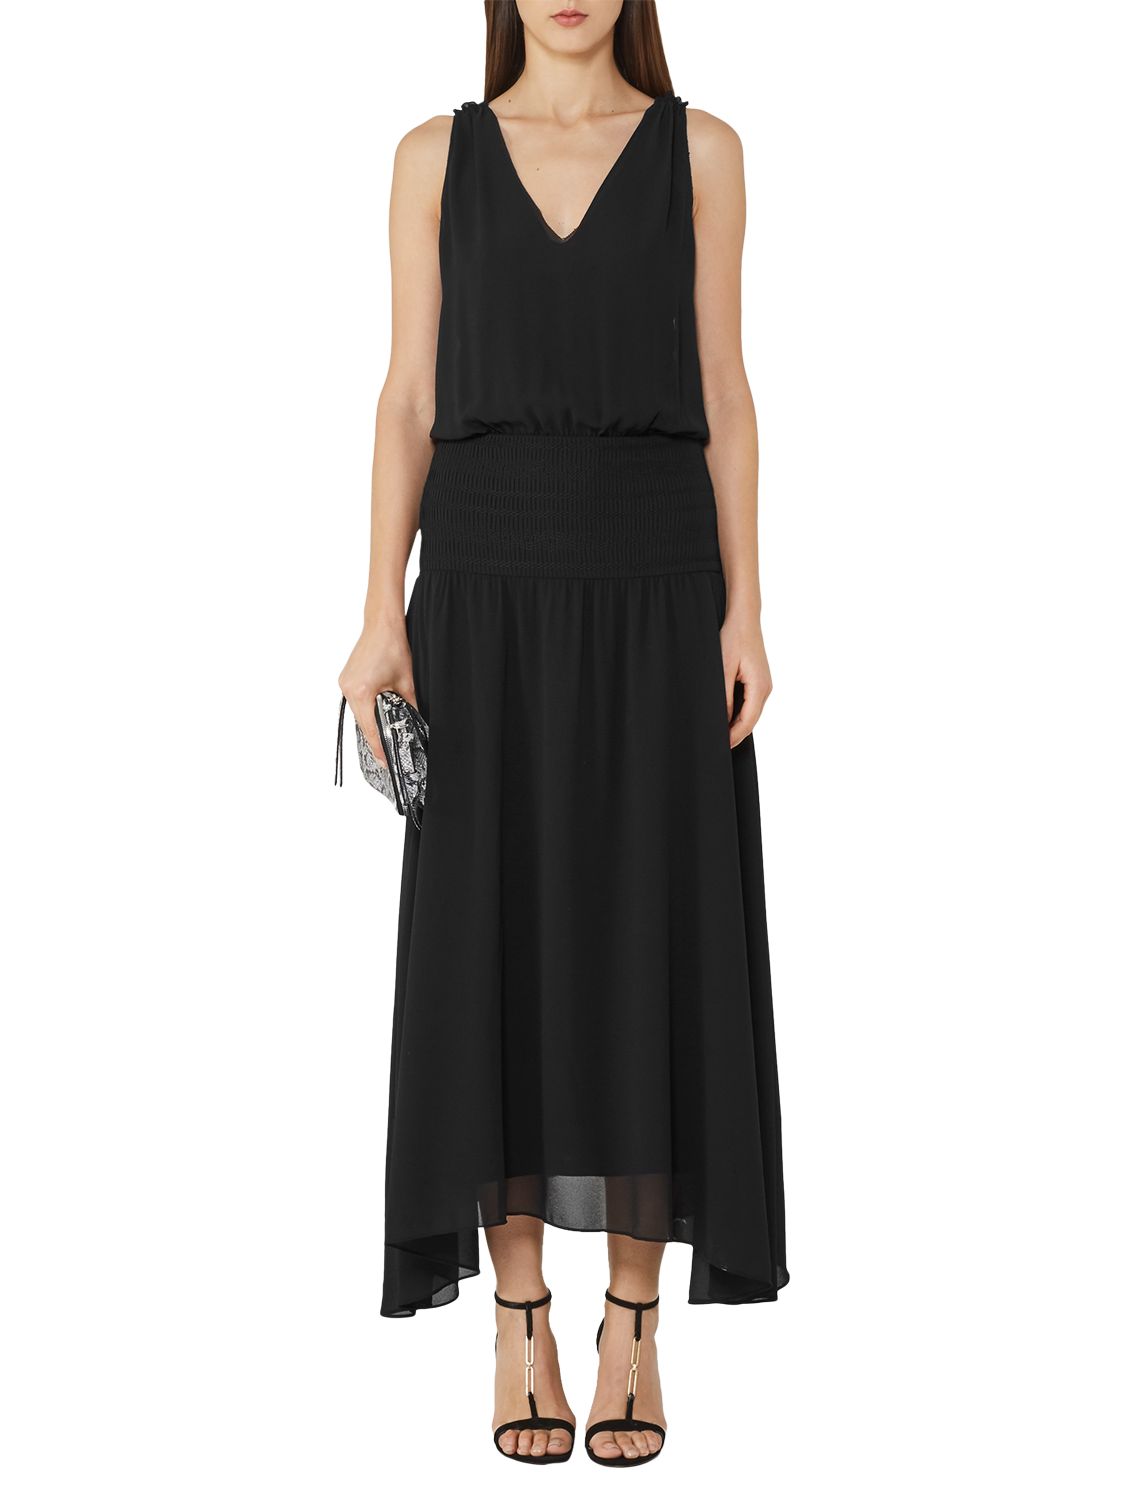 Reiss Mari Cross-Back Maxi Dress, Black at John Lewis & Partners